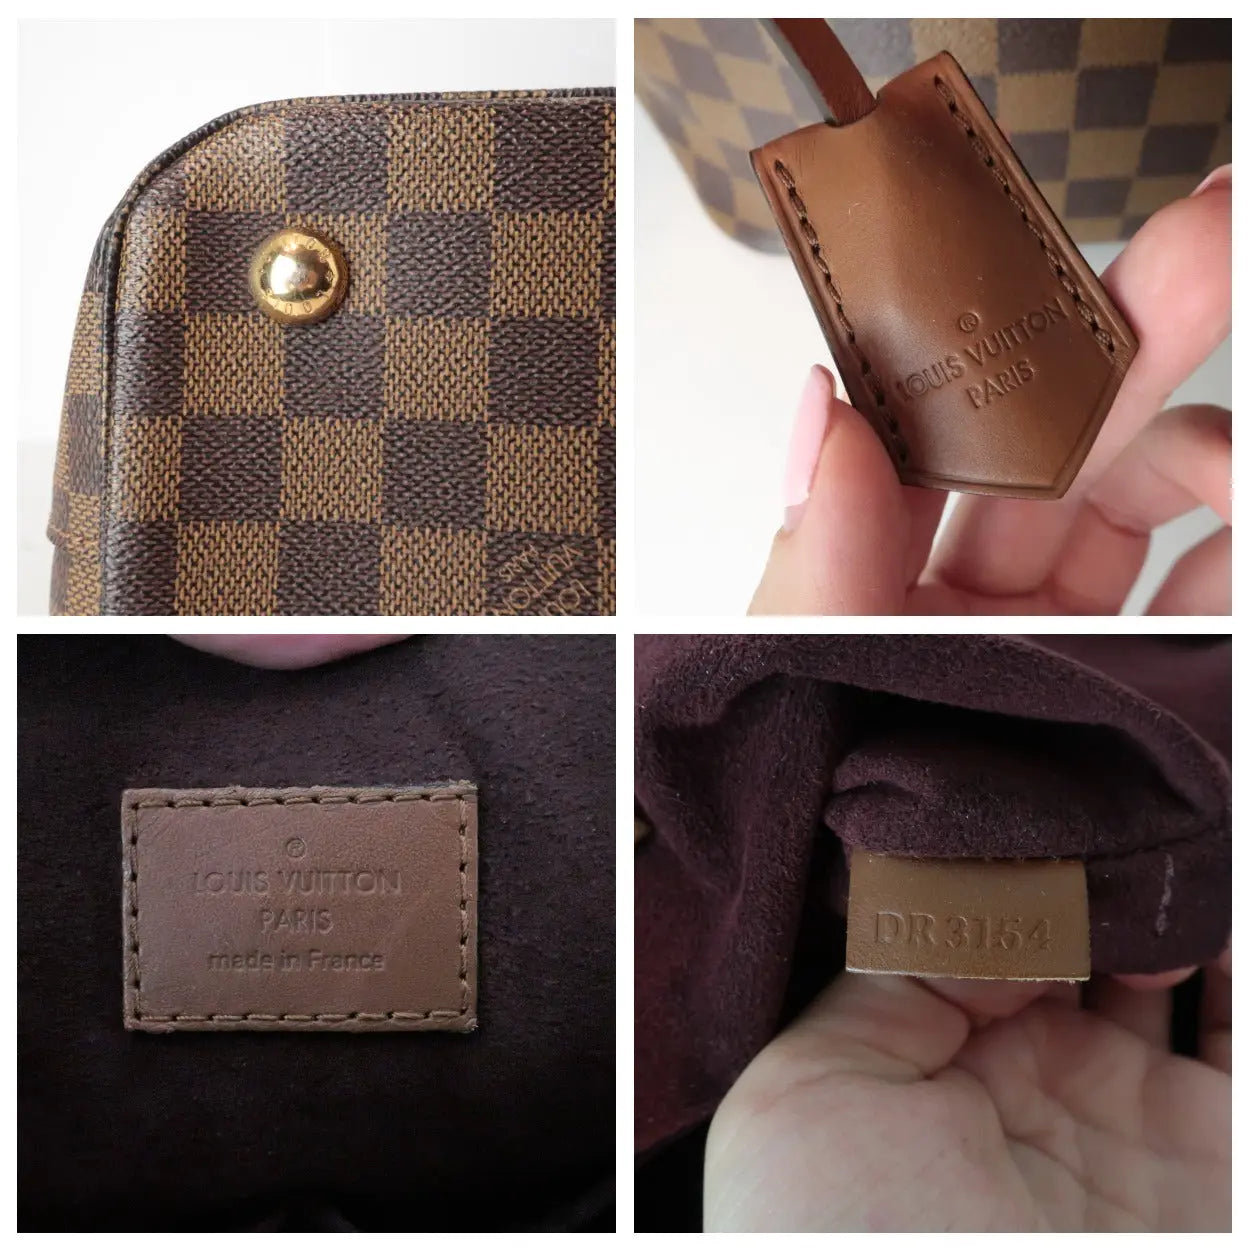 Louis Vuitton Louis Vuitton Damier Ebene Belmont Shoulder Bag (772) LVBagaholic